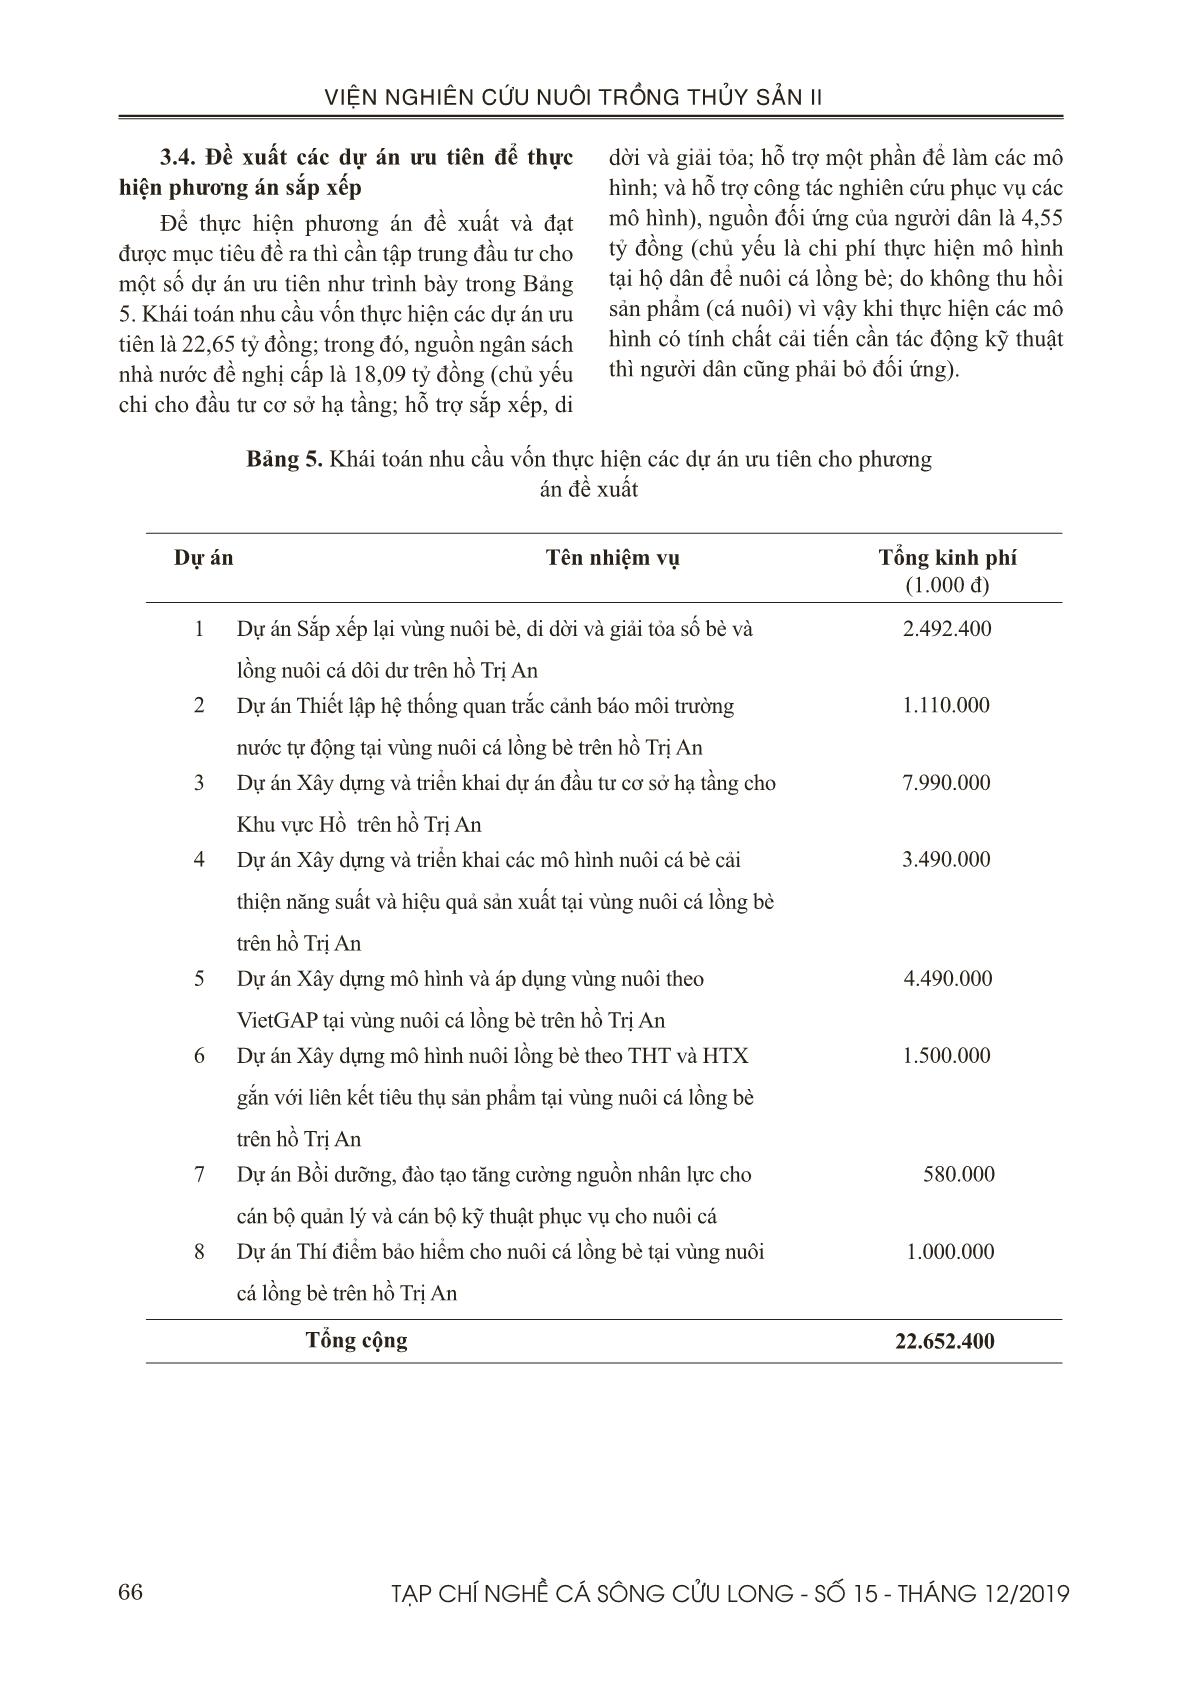 Đề xuất phương án sắp xếp vùng nuôi cá lồng bè trên hồ Trị An trang 10